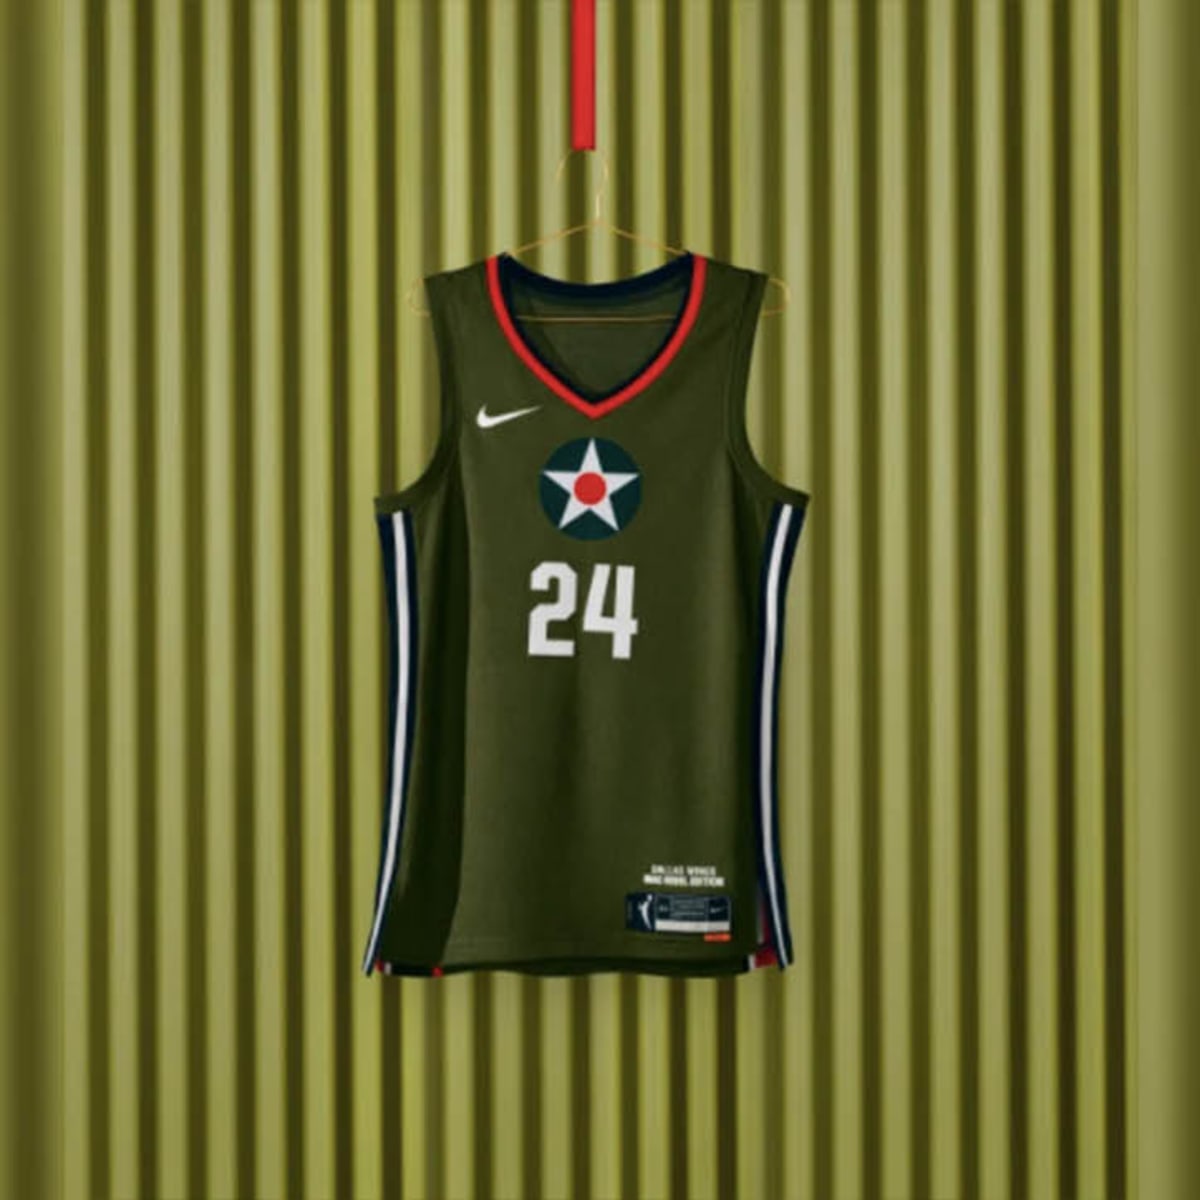 WNBA - MERCH alert 🚨👀 Get your #WNBA jerseys right here